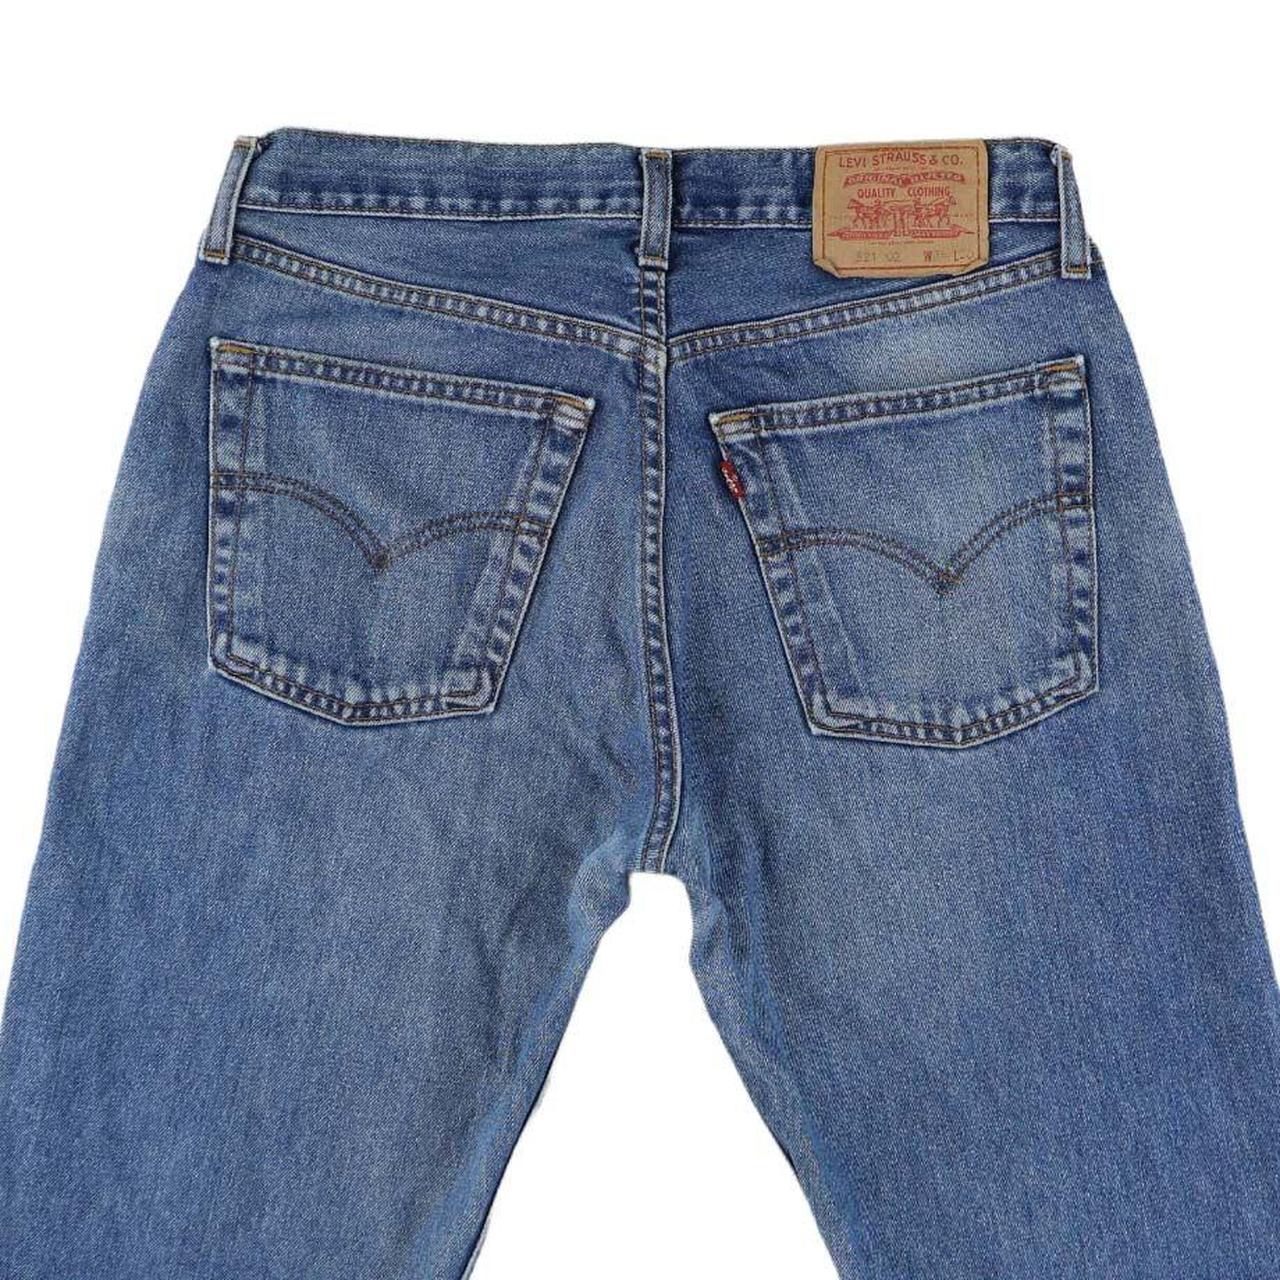 Levis Jeans 90s Levi 521 mid wash blue Denim... - Depop